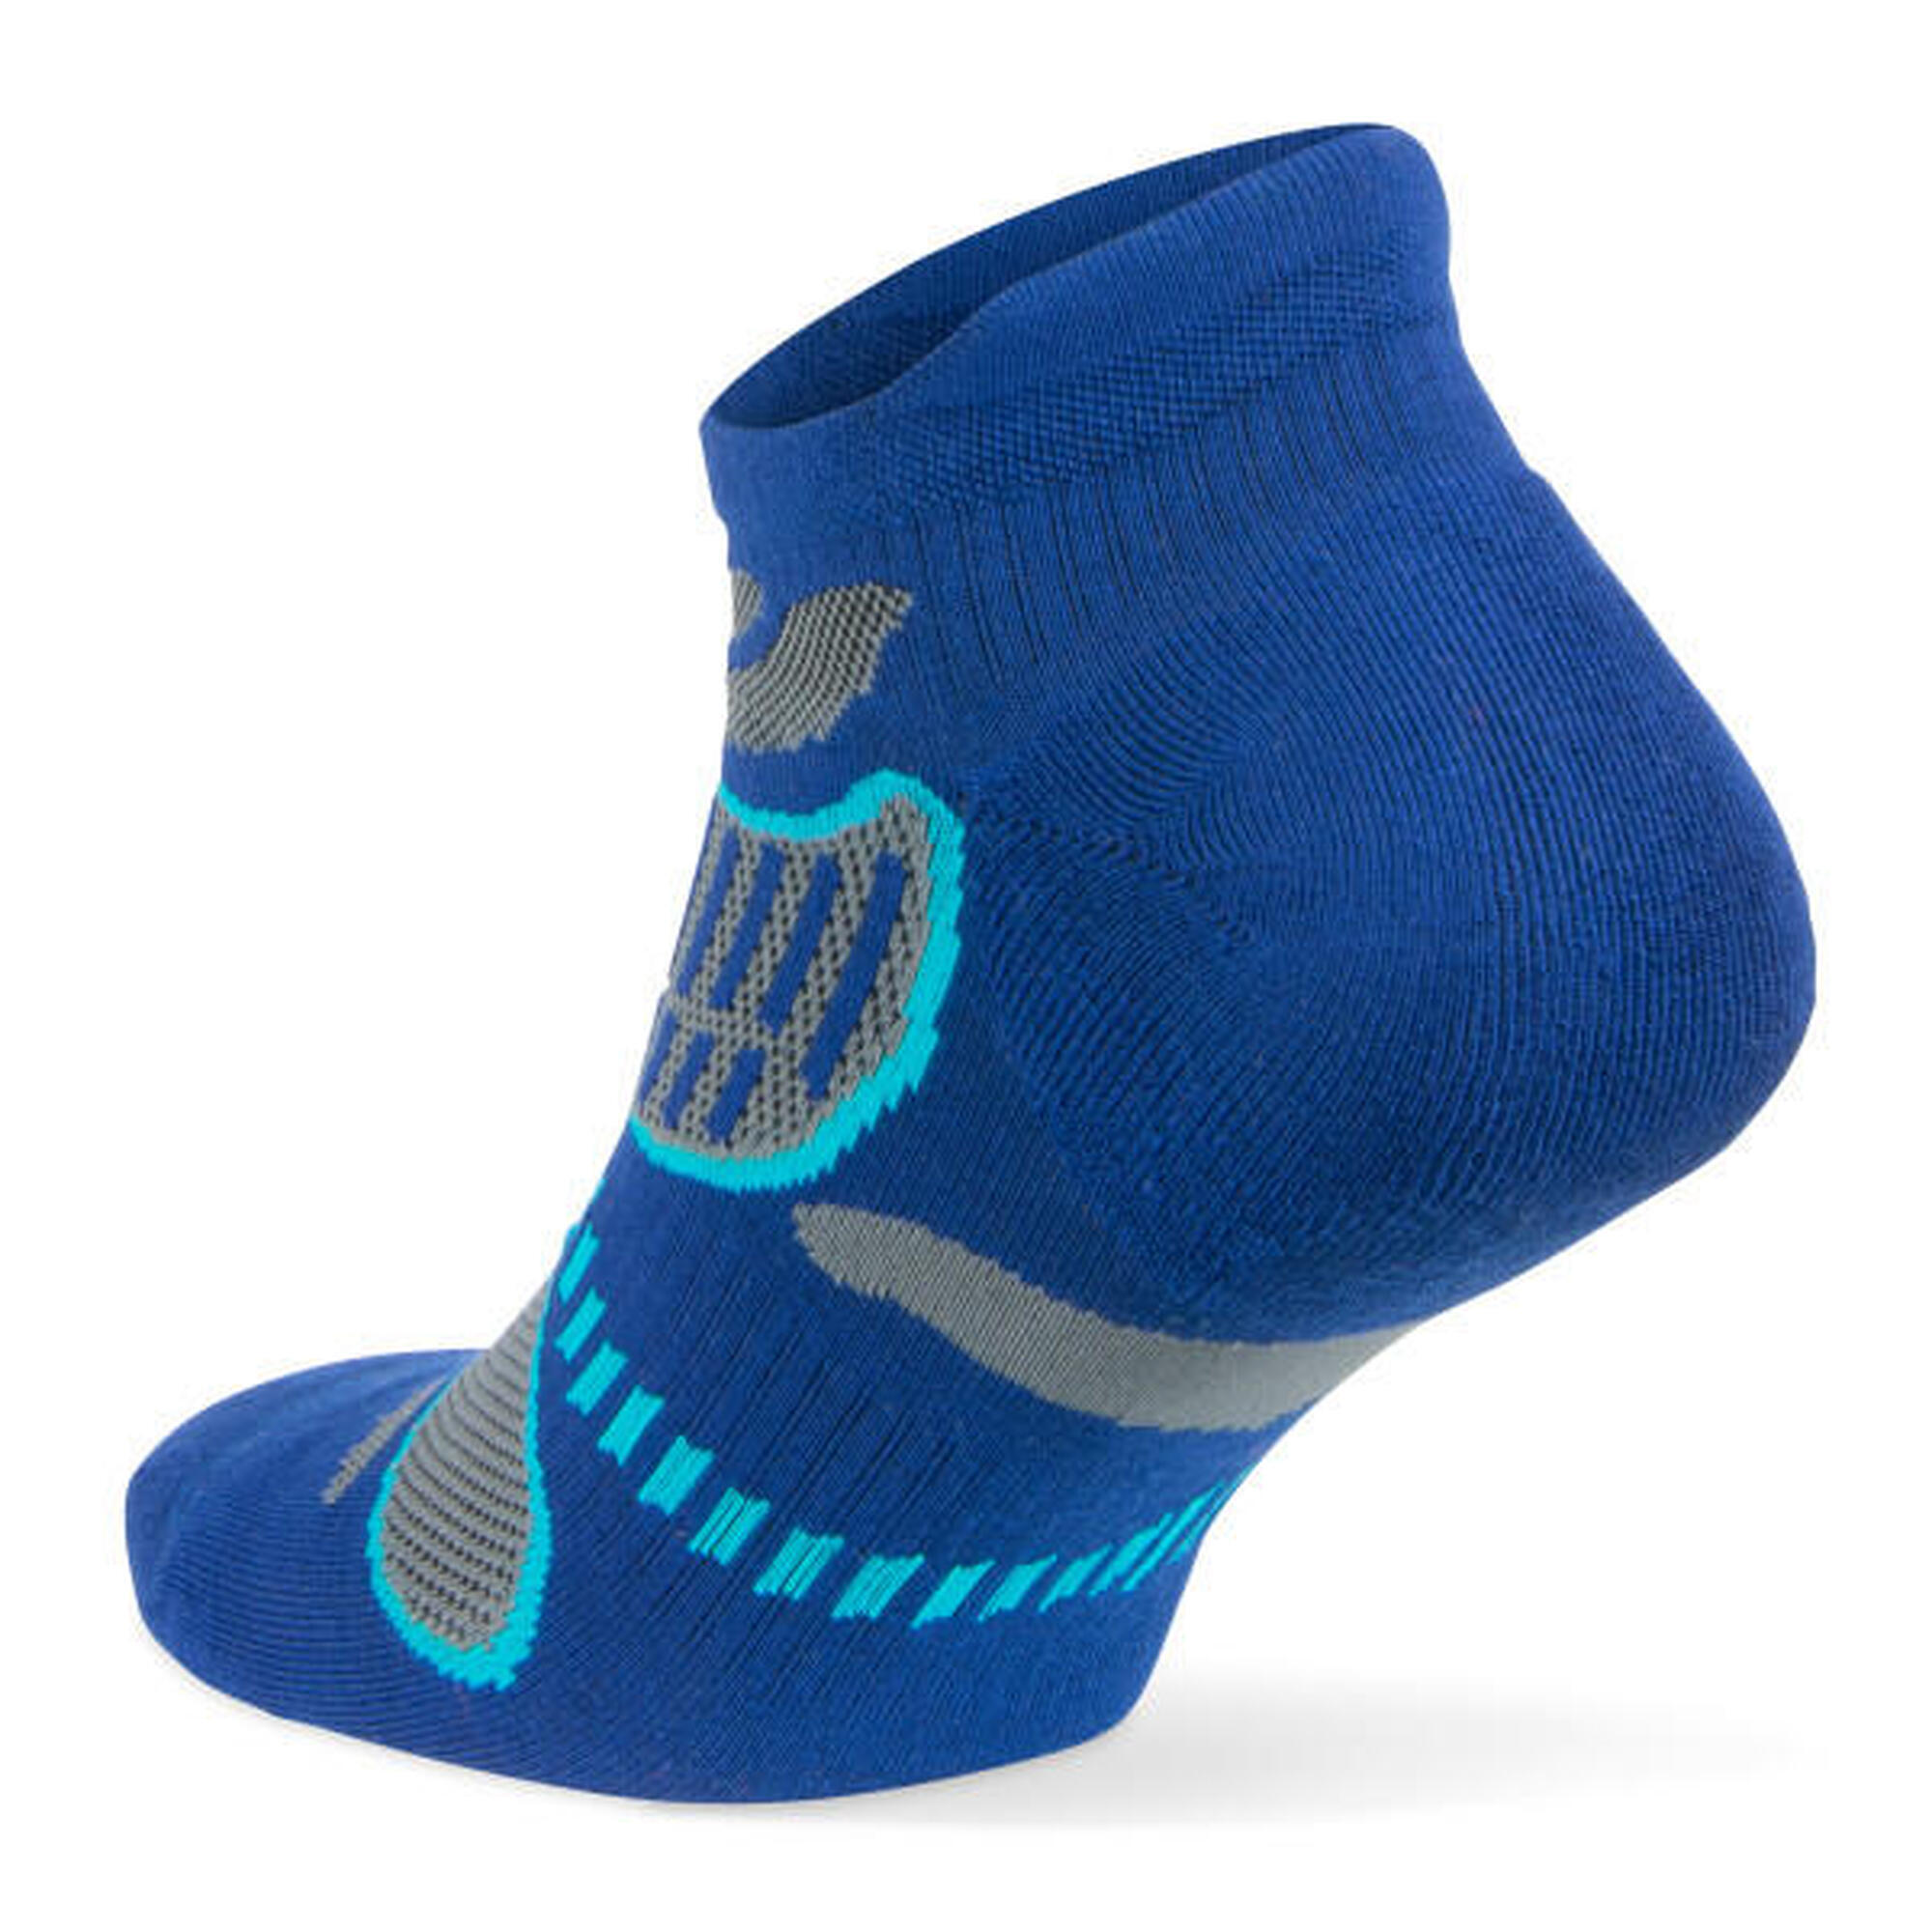 Balega running calcetines: Ligereza, control de la humedad y confort Talla M